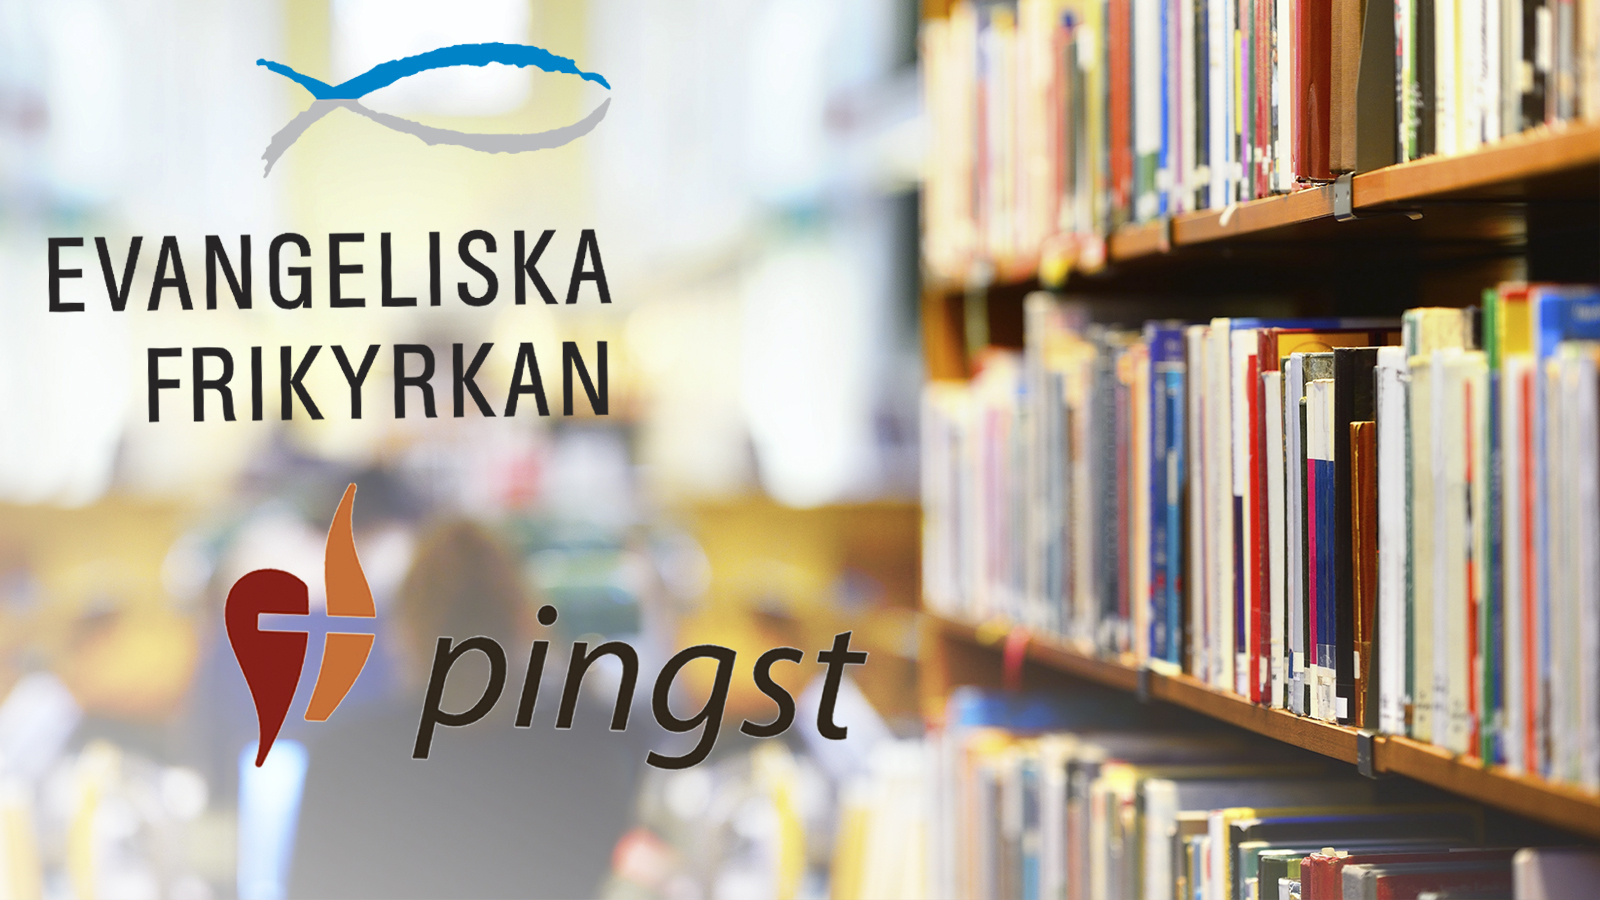 Pingst och EFK blir nya ägare till bokförlaget Libris